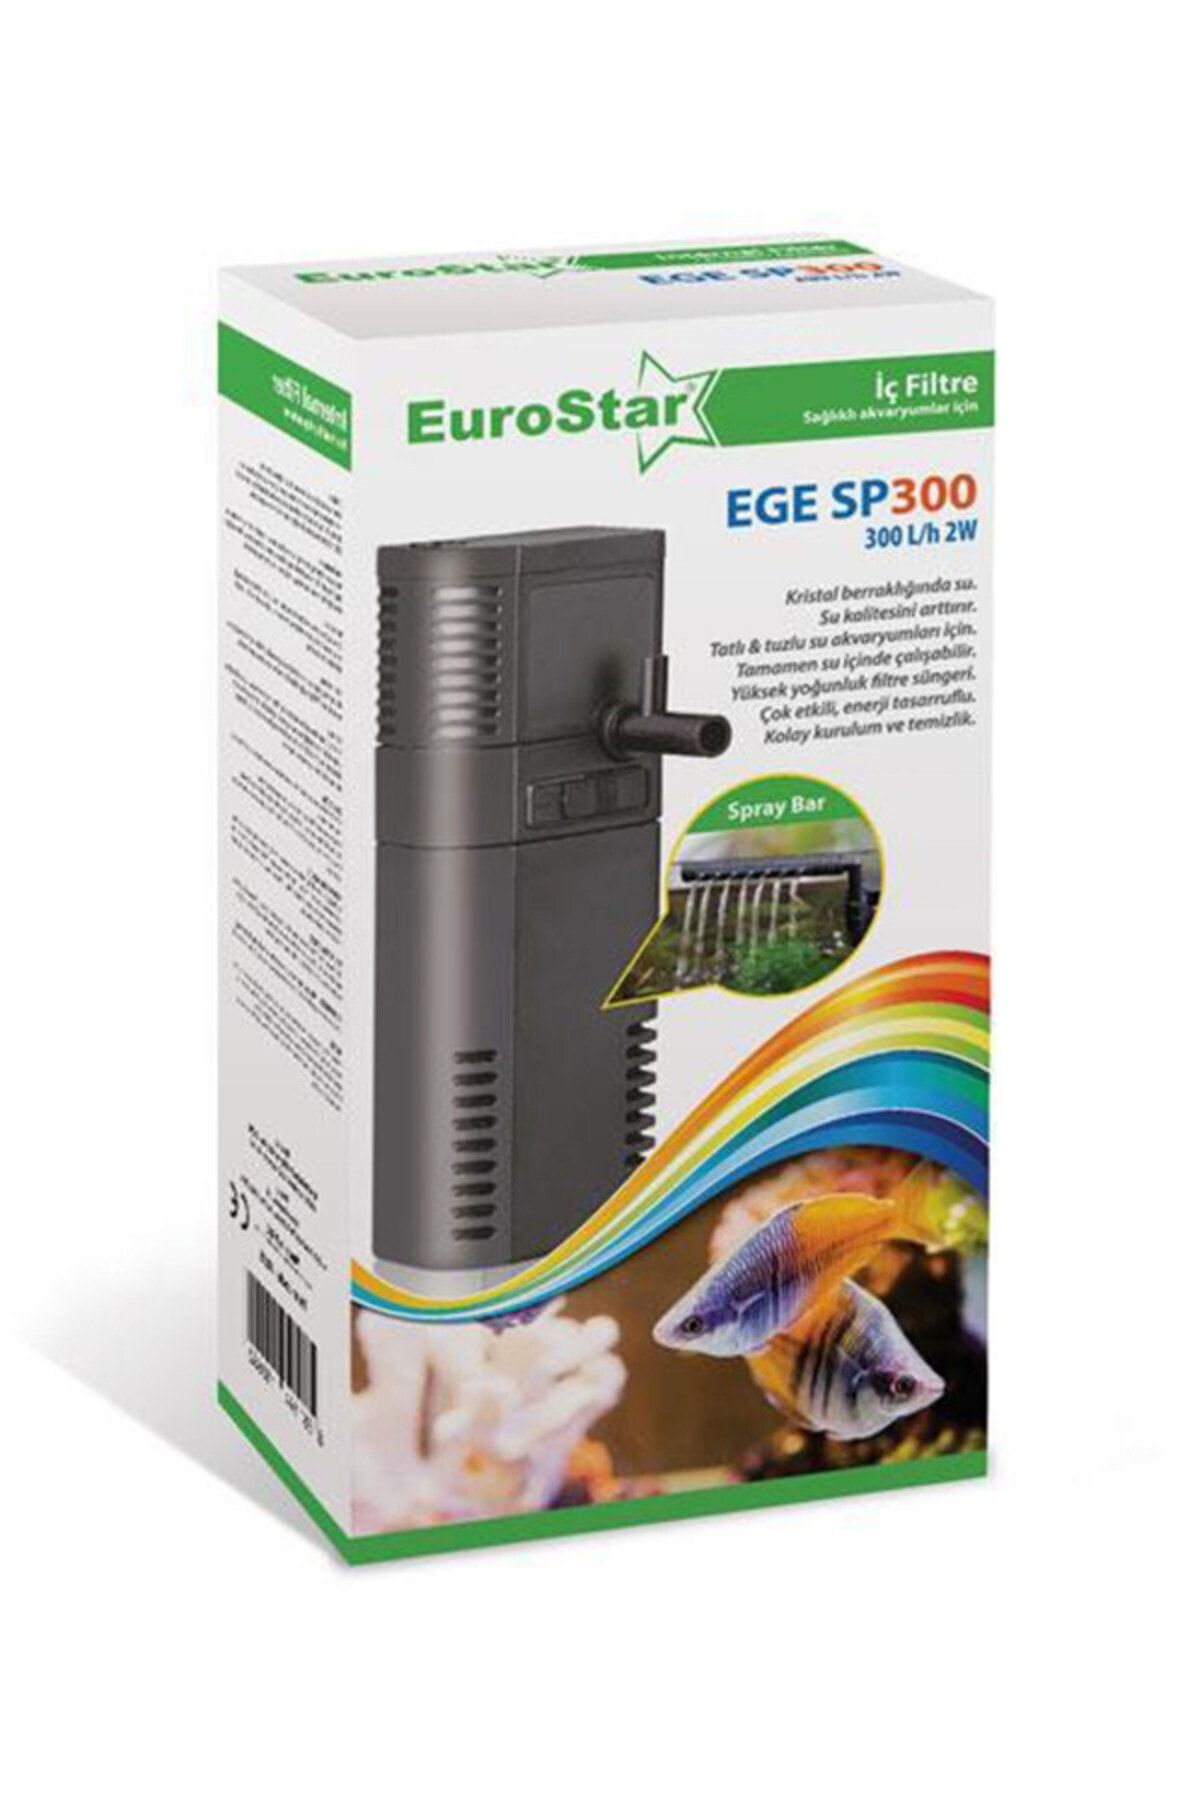 EuroStar Ege Sp300 Iç Filtre 300 L/s 2w